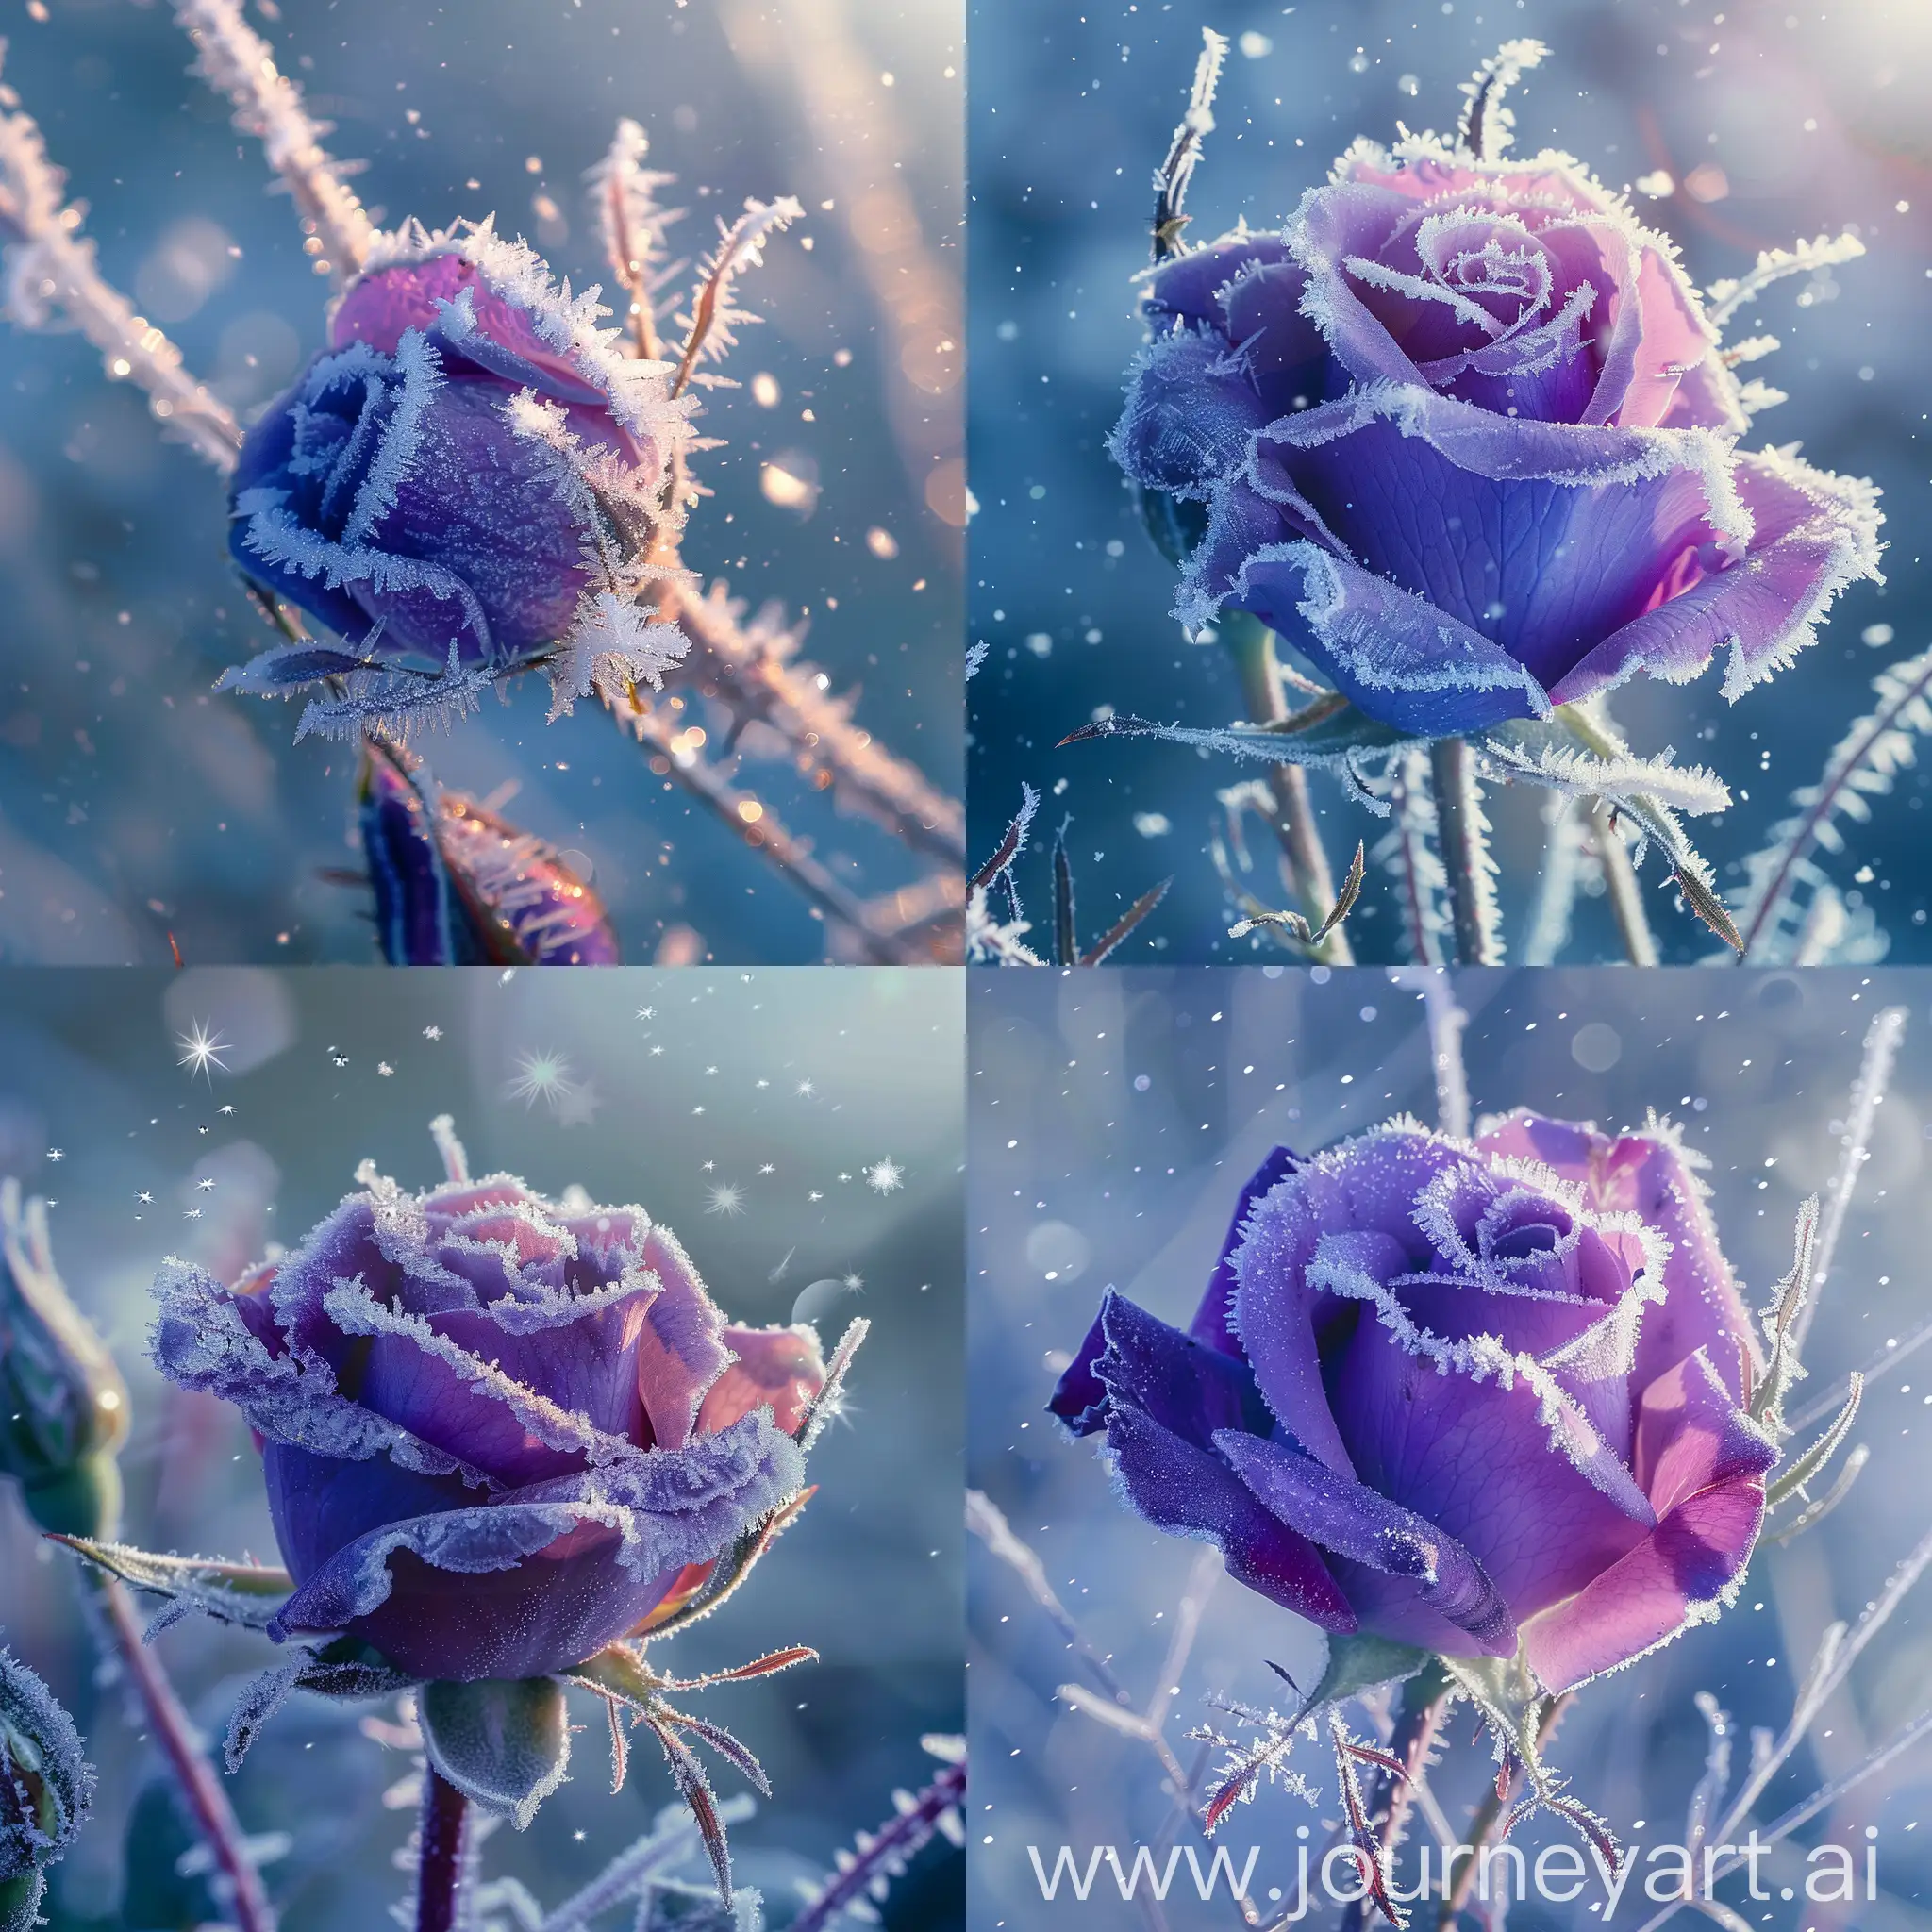 Макро, голубо- фиолетовая роза  в инее , длинных иголочках инея , на  голубоватом фоне  падают снежинки , утреннее солнце ,профессиональное фото , всокое качество